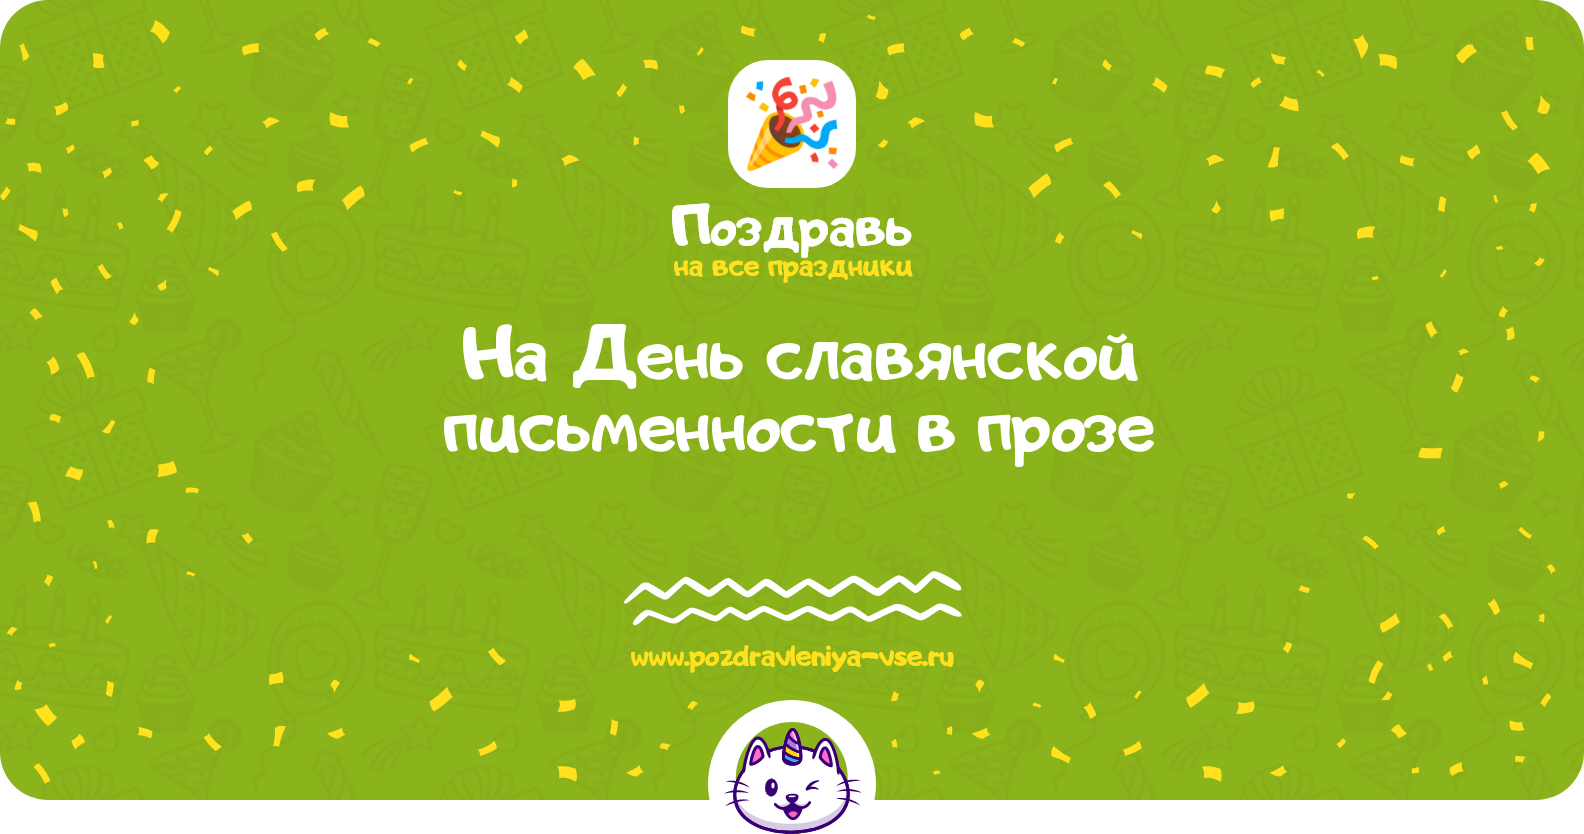 Поздравления на День славянской письменности в прозе — поздравления своими словами